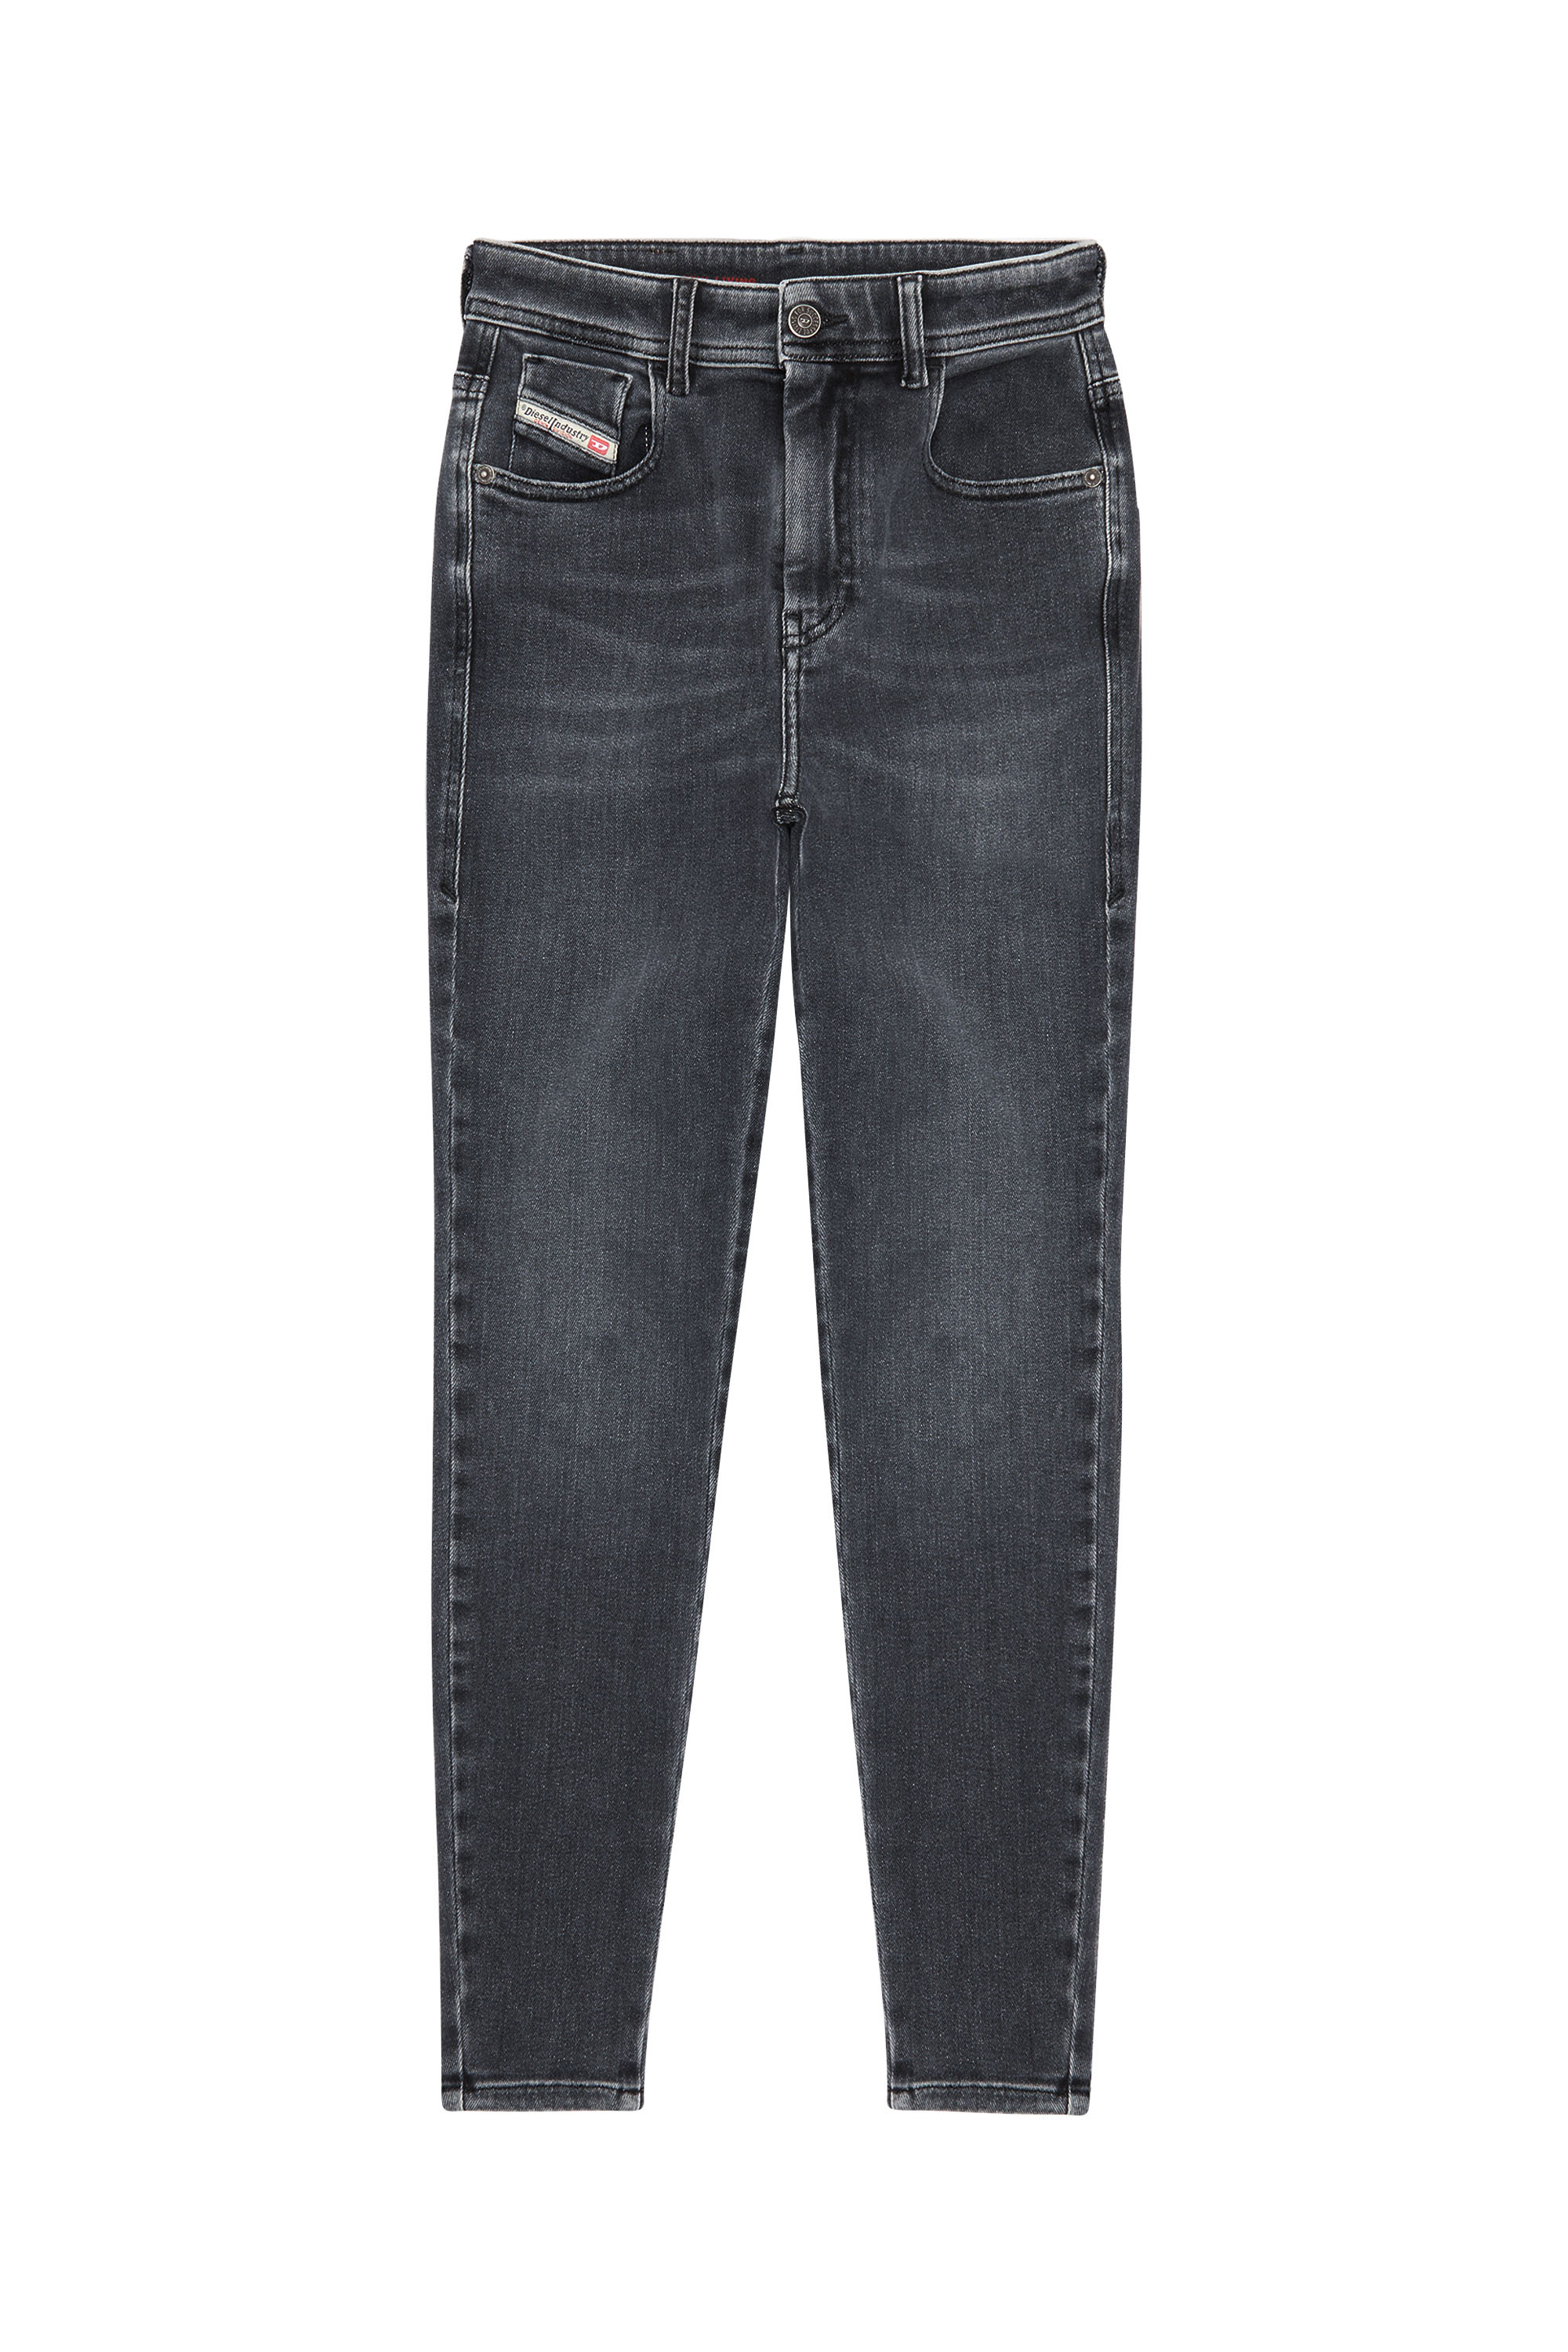 Diesel - Woman Super skinny Jeans 1984 Slandy-High 09D61, Black/Dark grey - Image 3